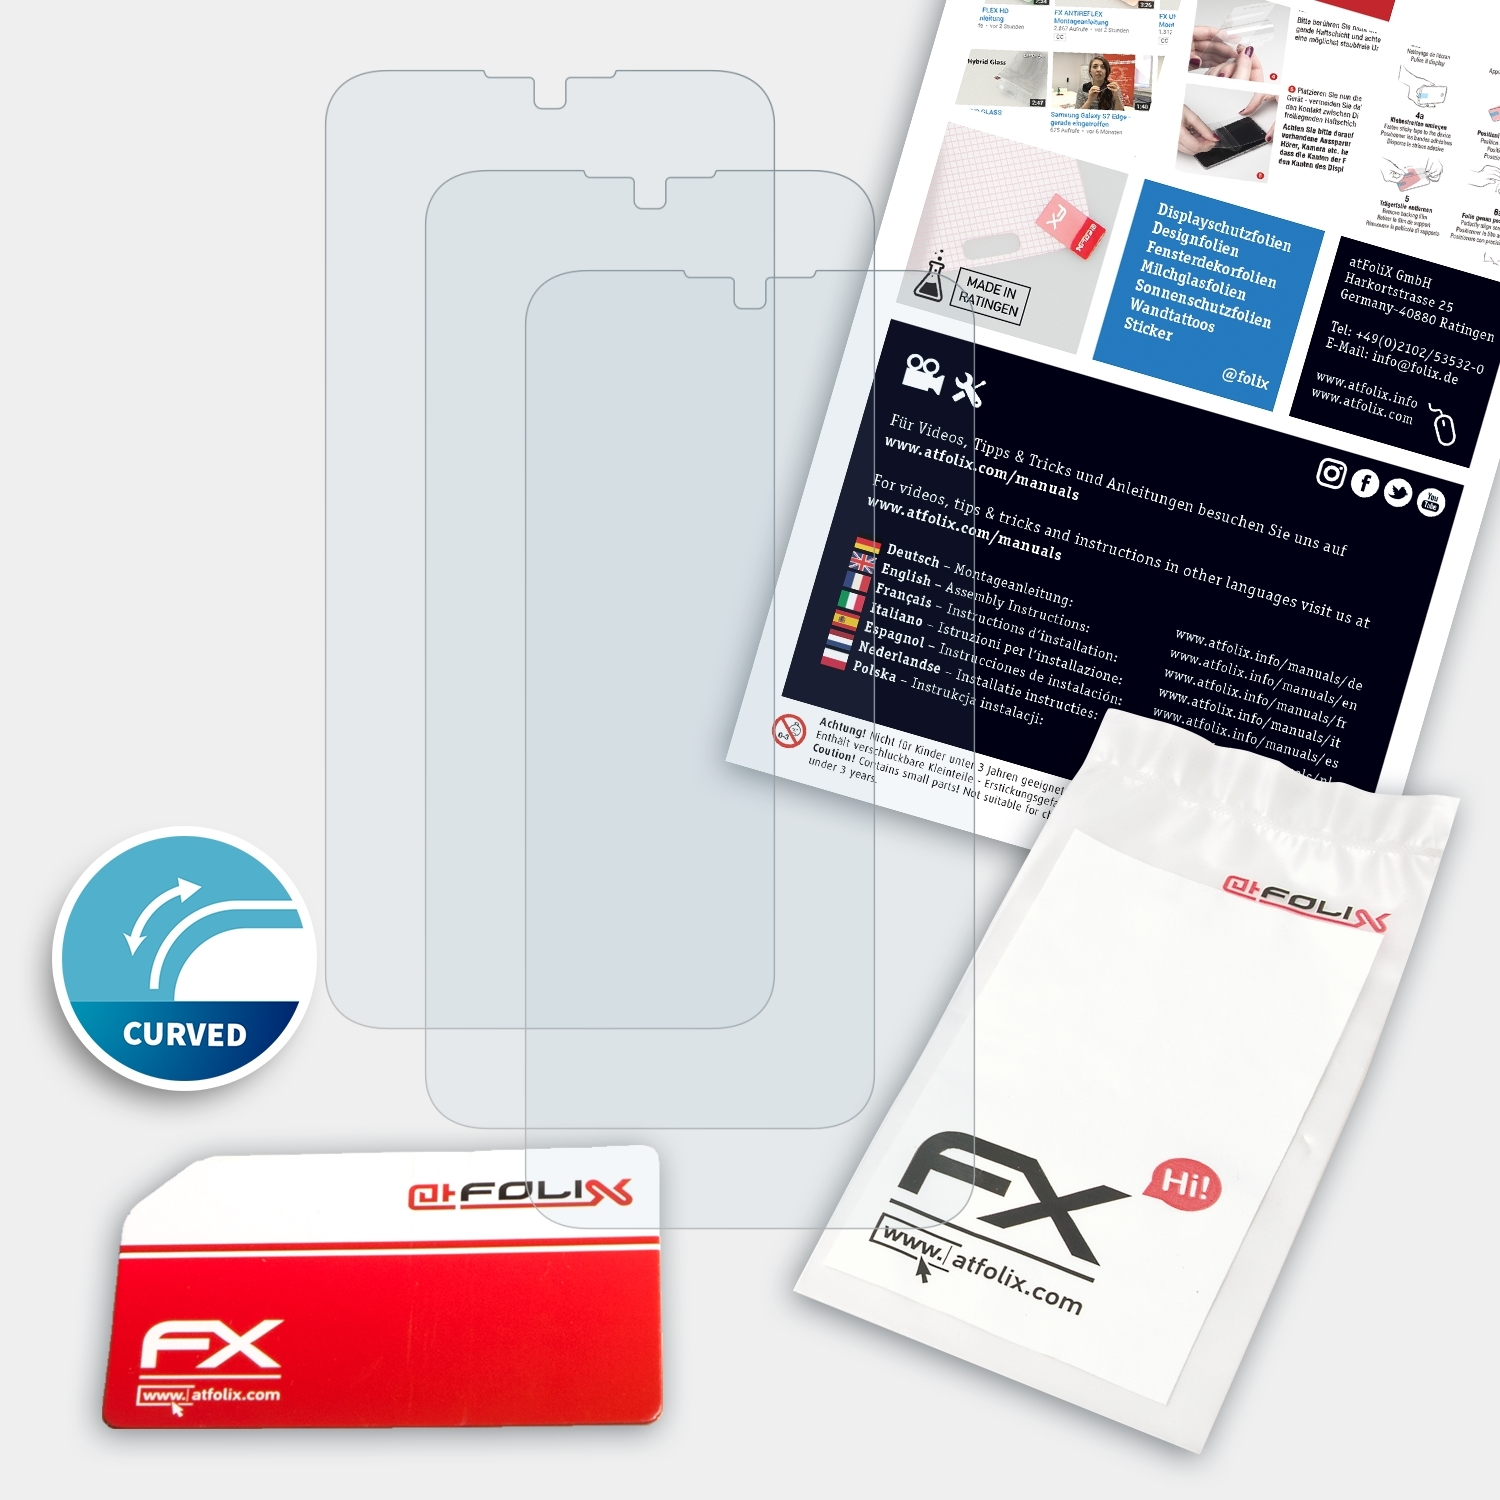 ATFOLIX 3x FX-ActiFleX Displayschutz(für ZTE Blade 10 Prime)